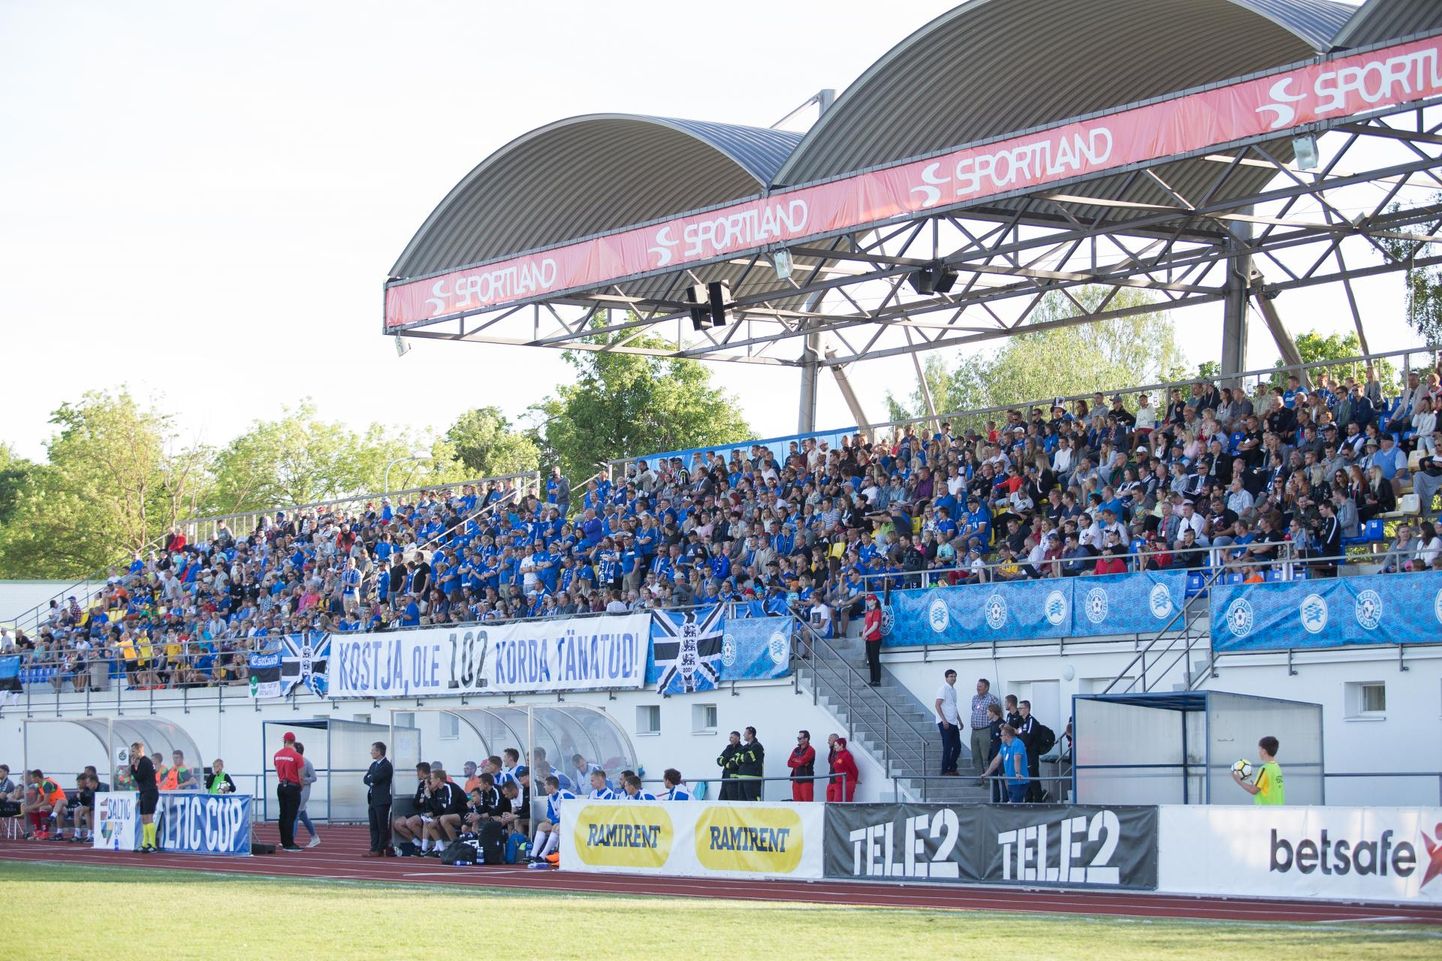 Möödunud aastal pidas Eesti meeste jalgpallikoondis ajaloolise esimese matši Rakvere staadionil, alistades Balti turniiri raames ligemale 1500 koduse pealtvaataja ees Leedu.